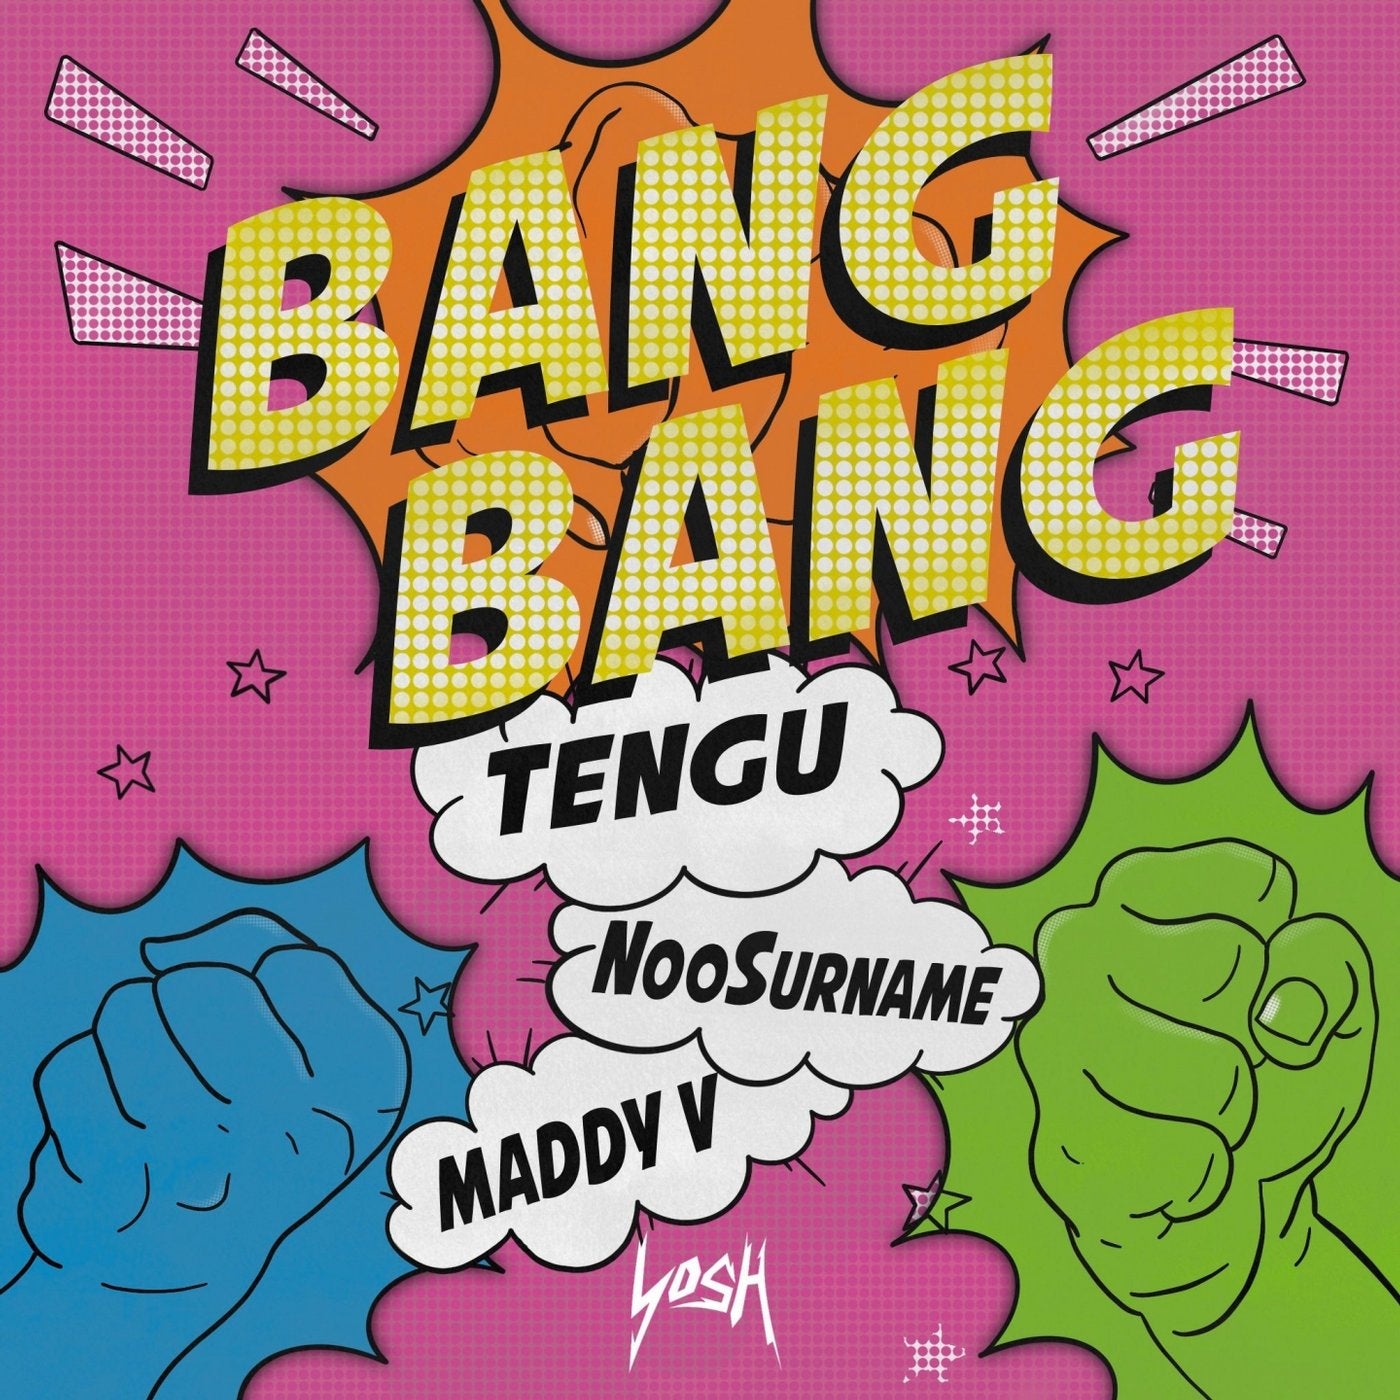 Bang bang face. Ban ban. Bang! Альбомы. Bang Bang текст. V Bangs.